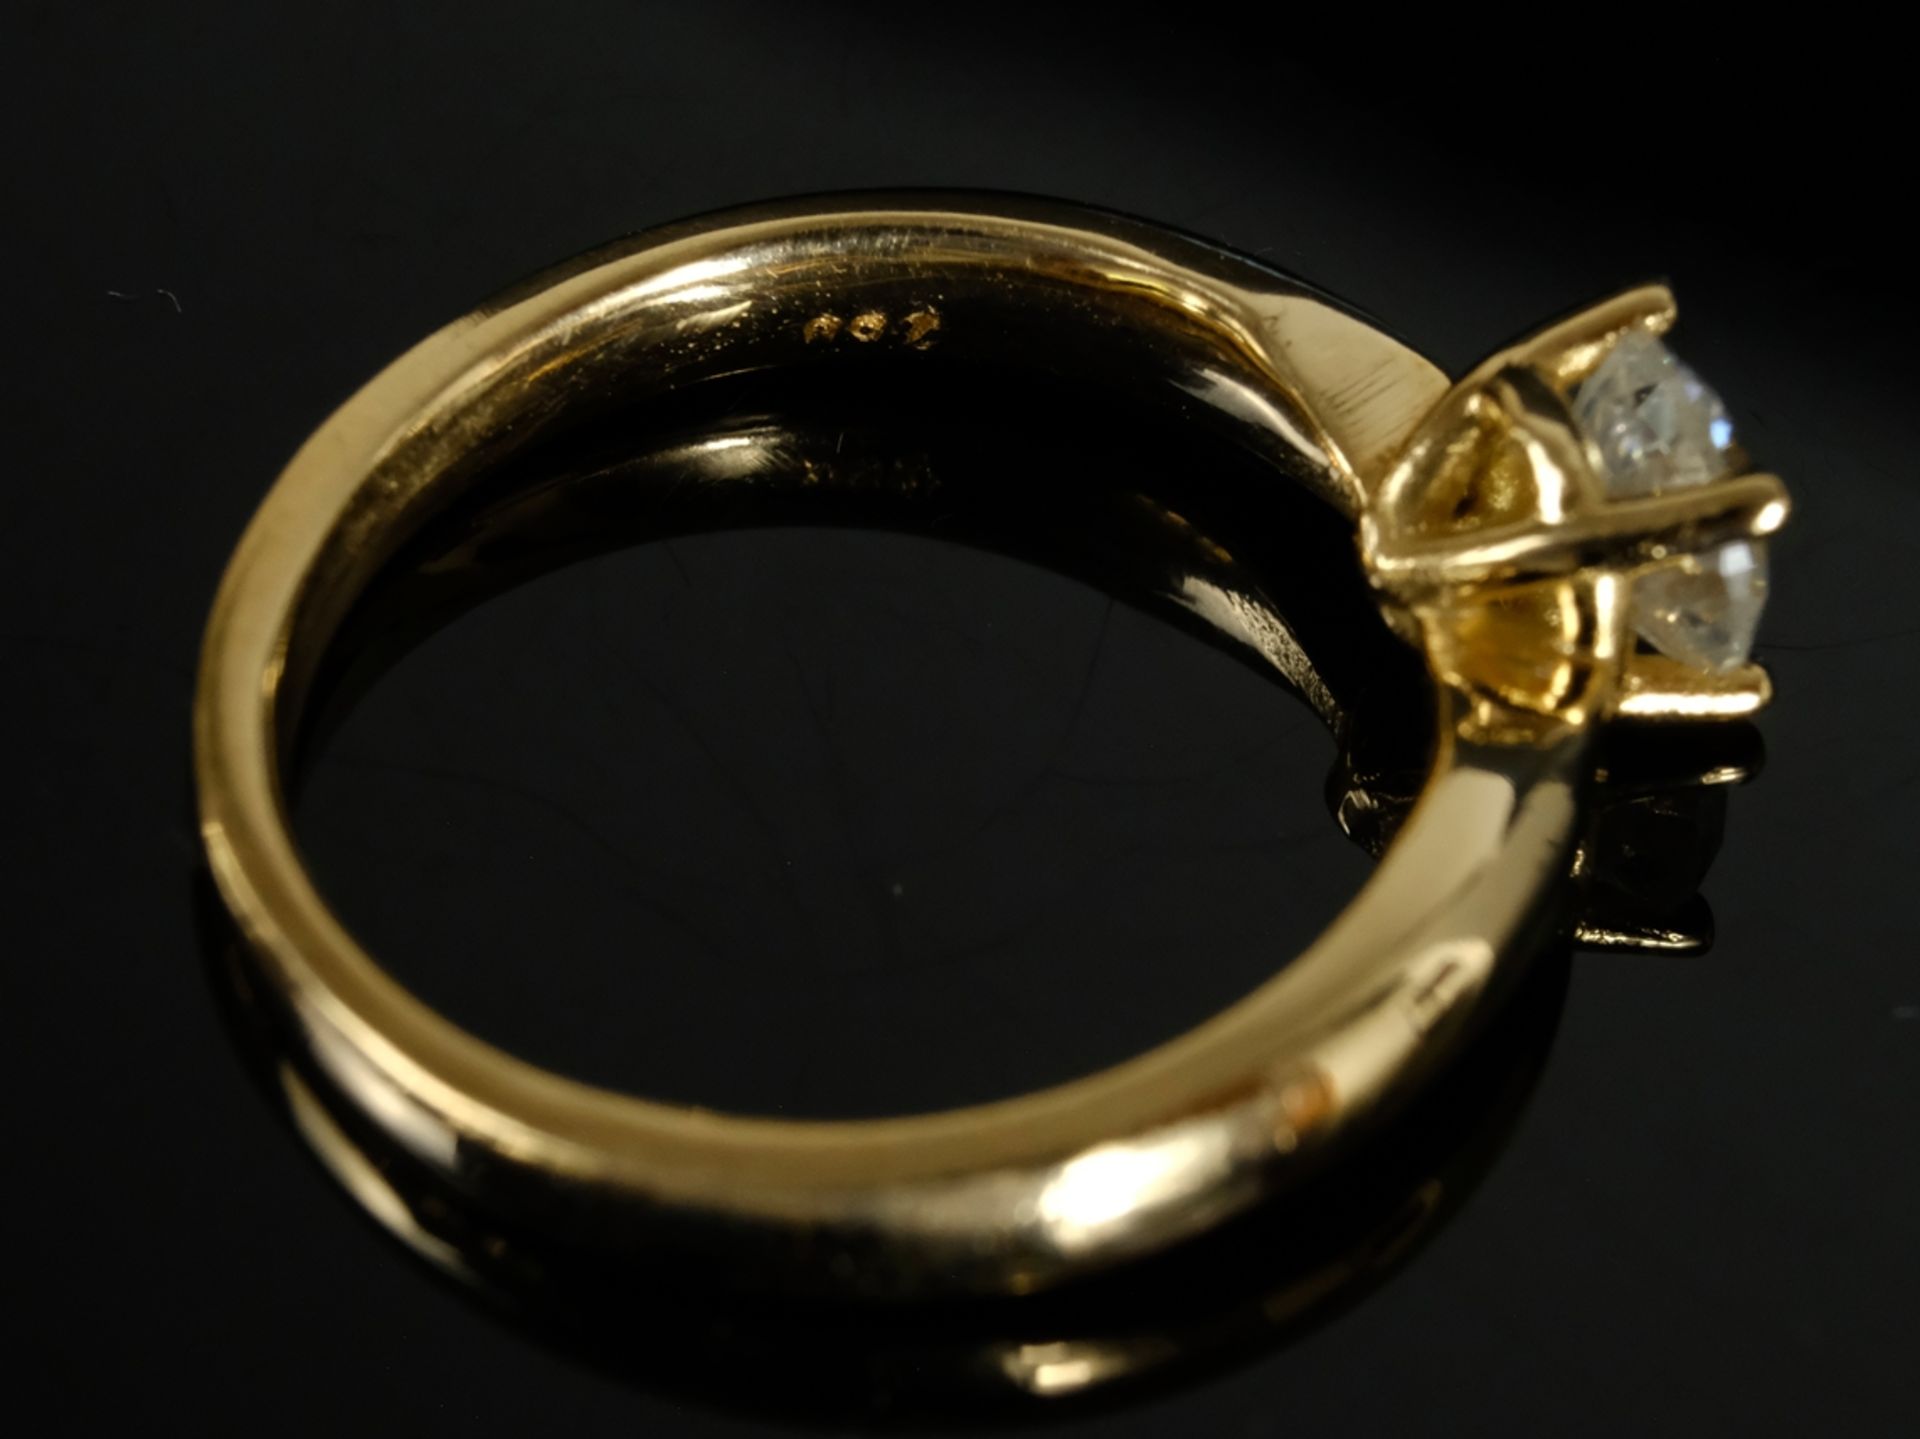 SOLITÄR Brillant-Ring, um 0,78ct, w/p, mit vier Krappen gefasst, Gr. 54, 5,29g, 750 RG - Bild 3 aus 3